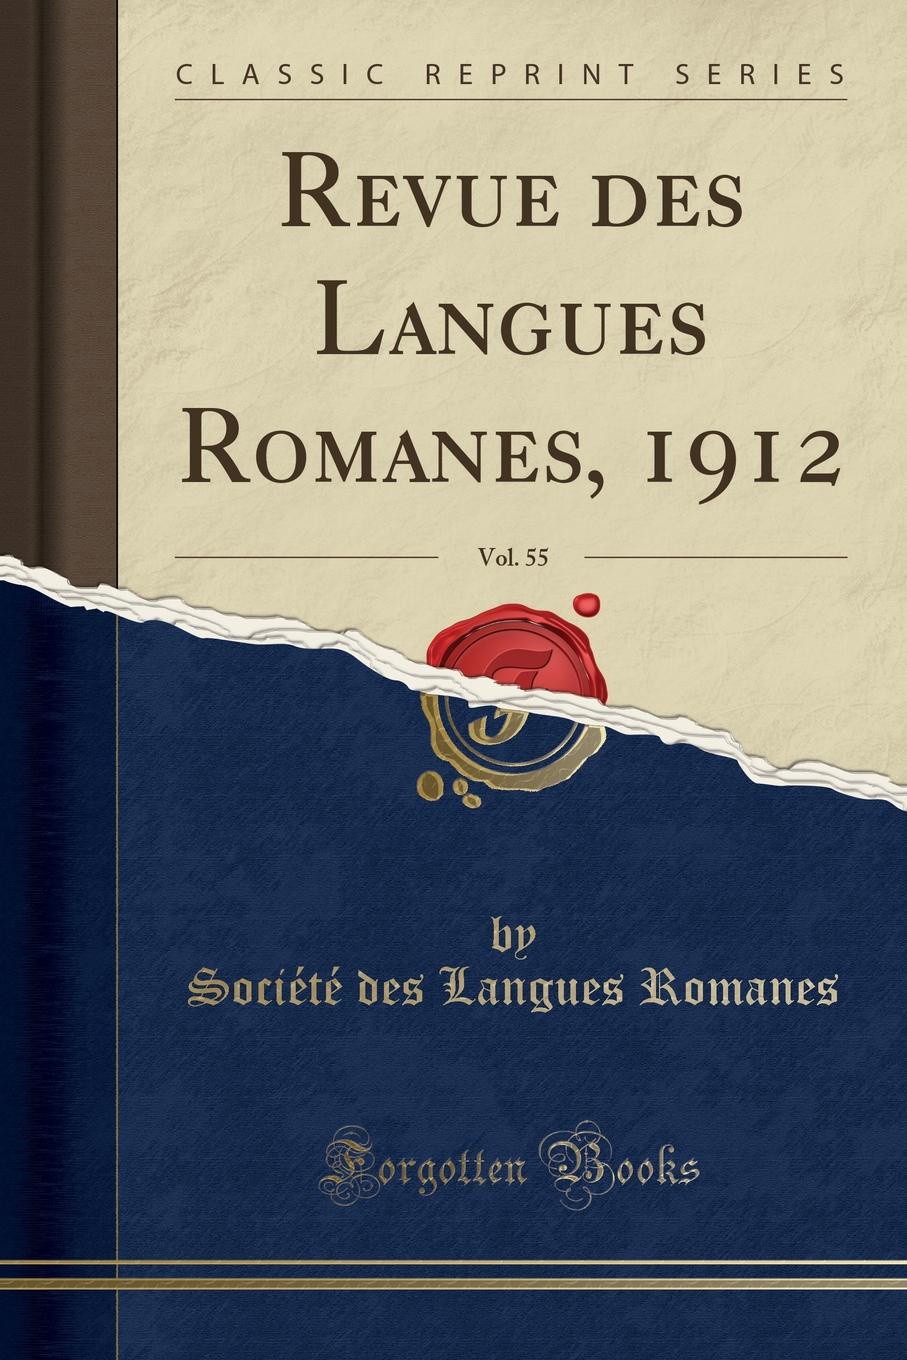 Société des Langues Romanes Revue des Langues Romanes, 1912, Vol. 55 (Classic Reprint)